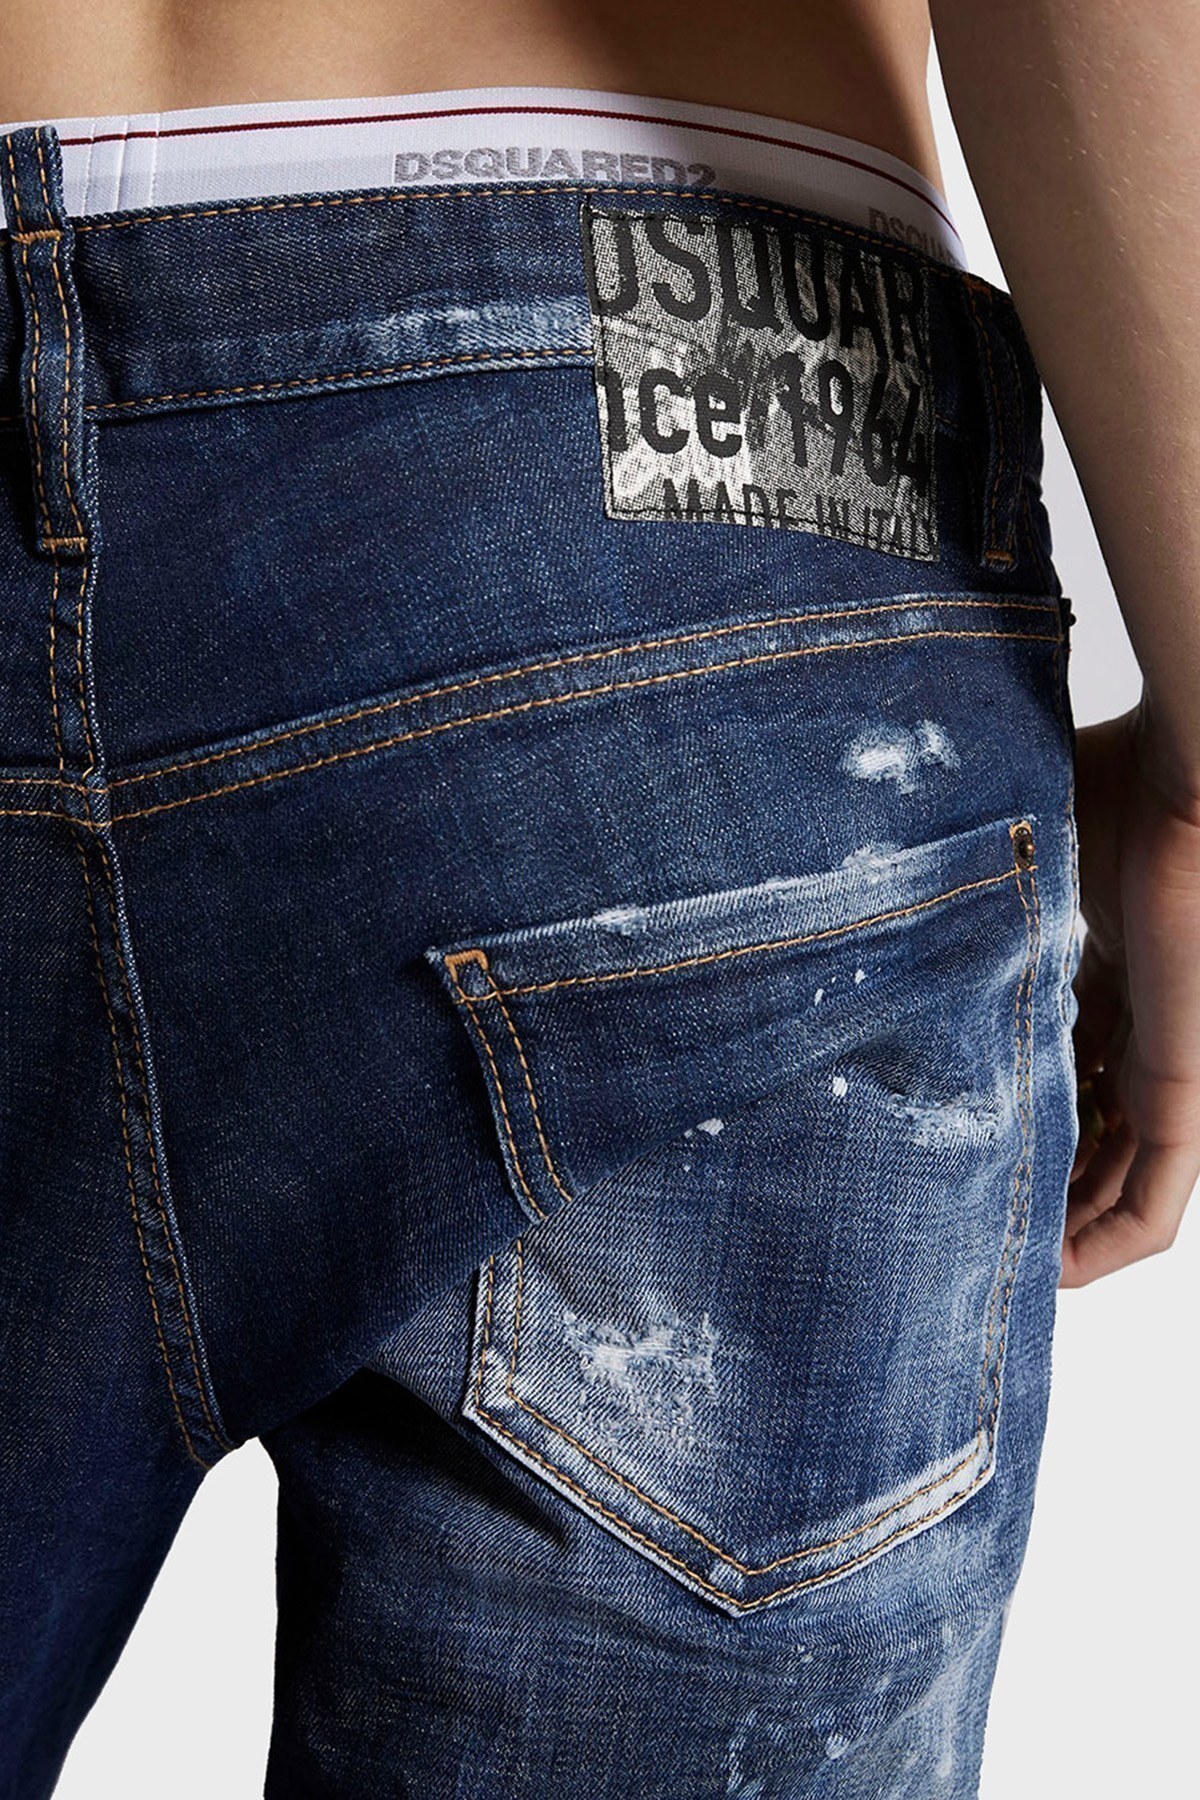 Dsquared2 Yırtık Detaylı Yüksek Bel Slim Fit Pamuklu Jeans Erkek Kot Pantolon S74LB0961 S30342 470 LACİVERT